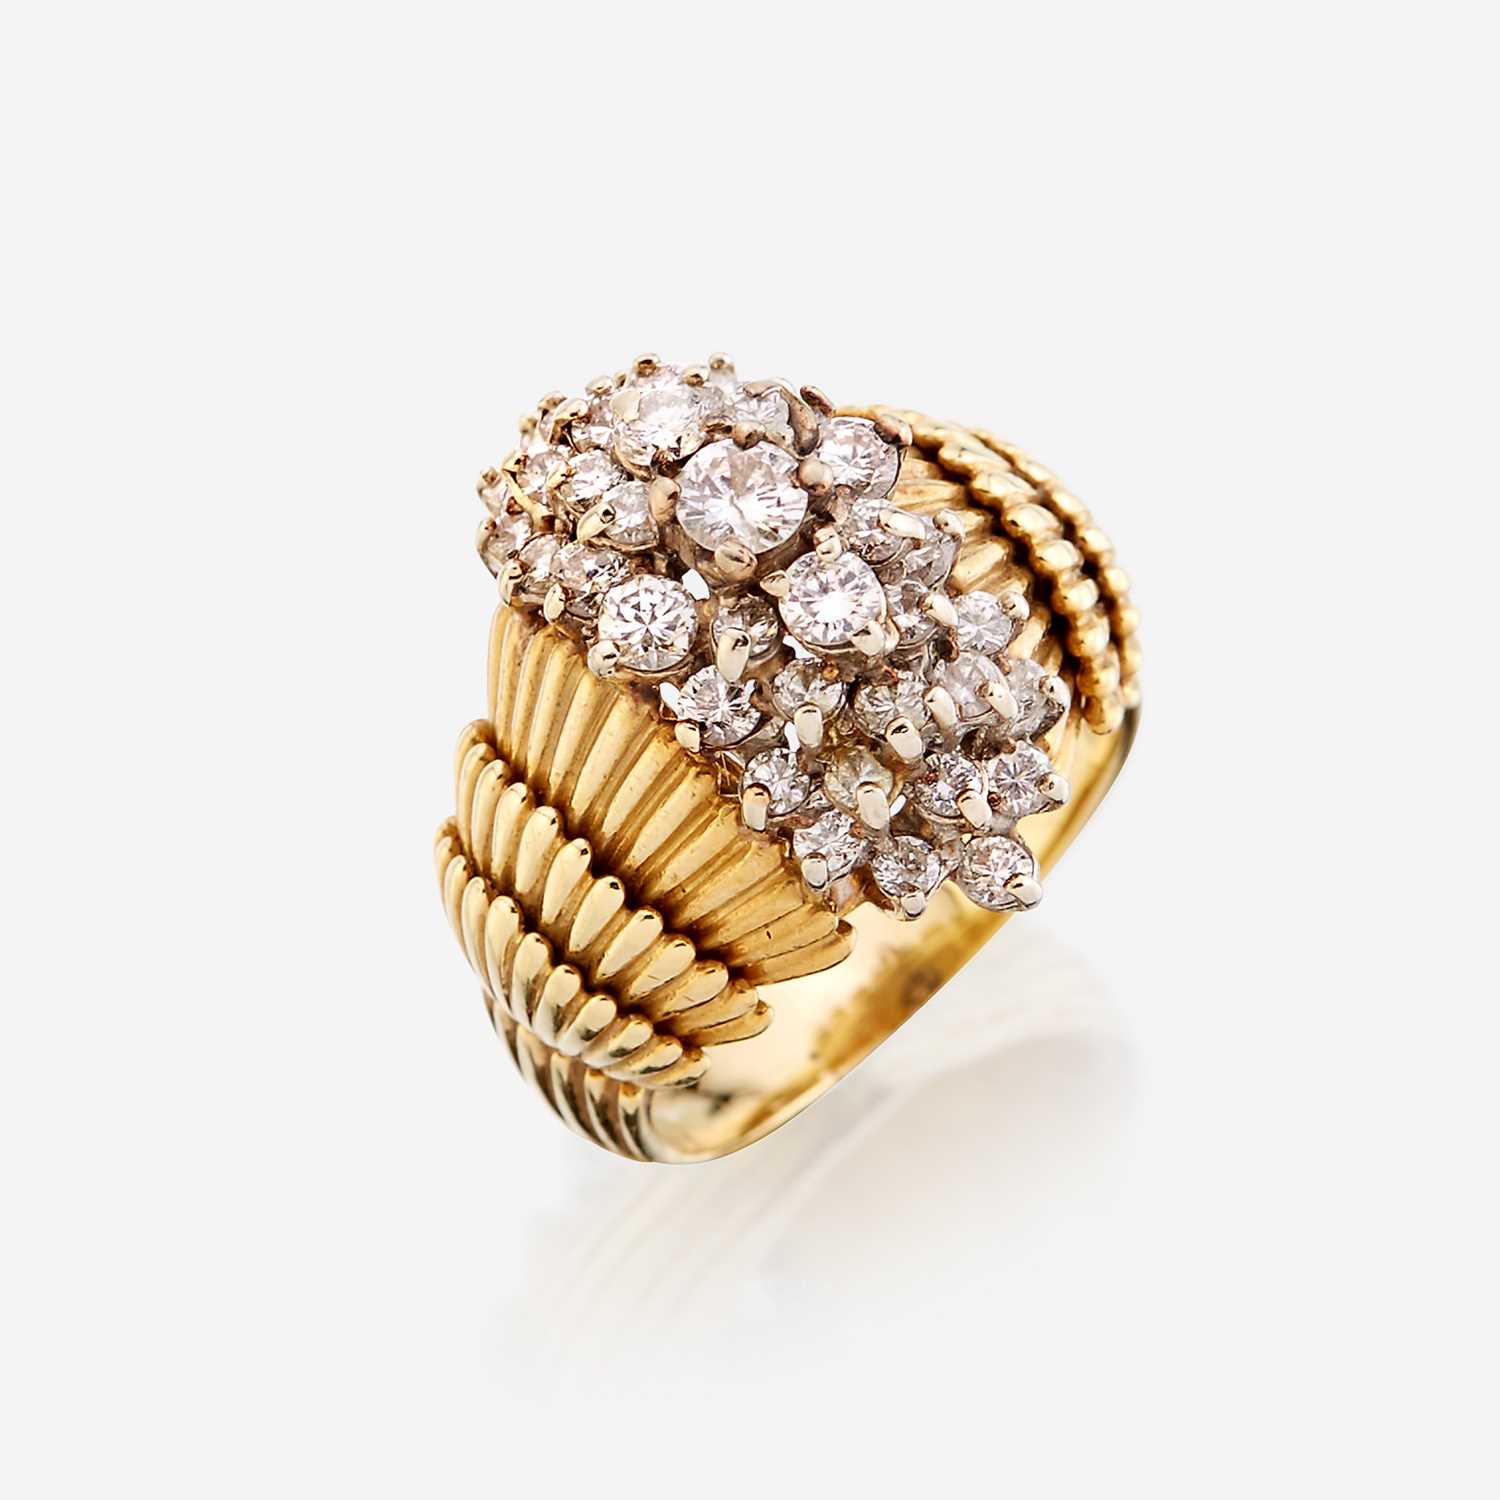 Lot 44 - An eighteen karat gold and diamond ring